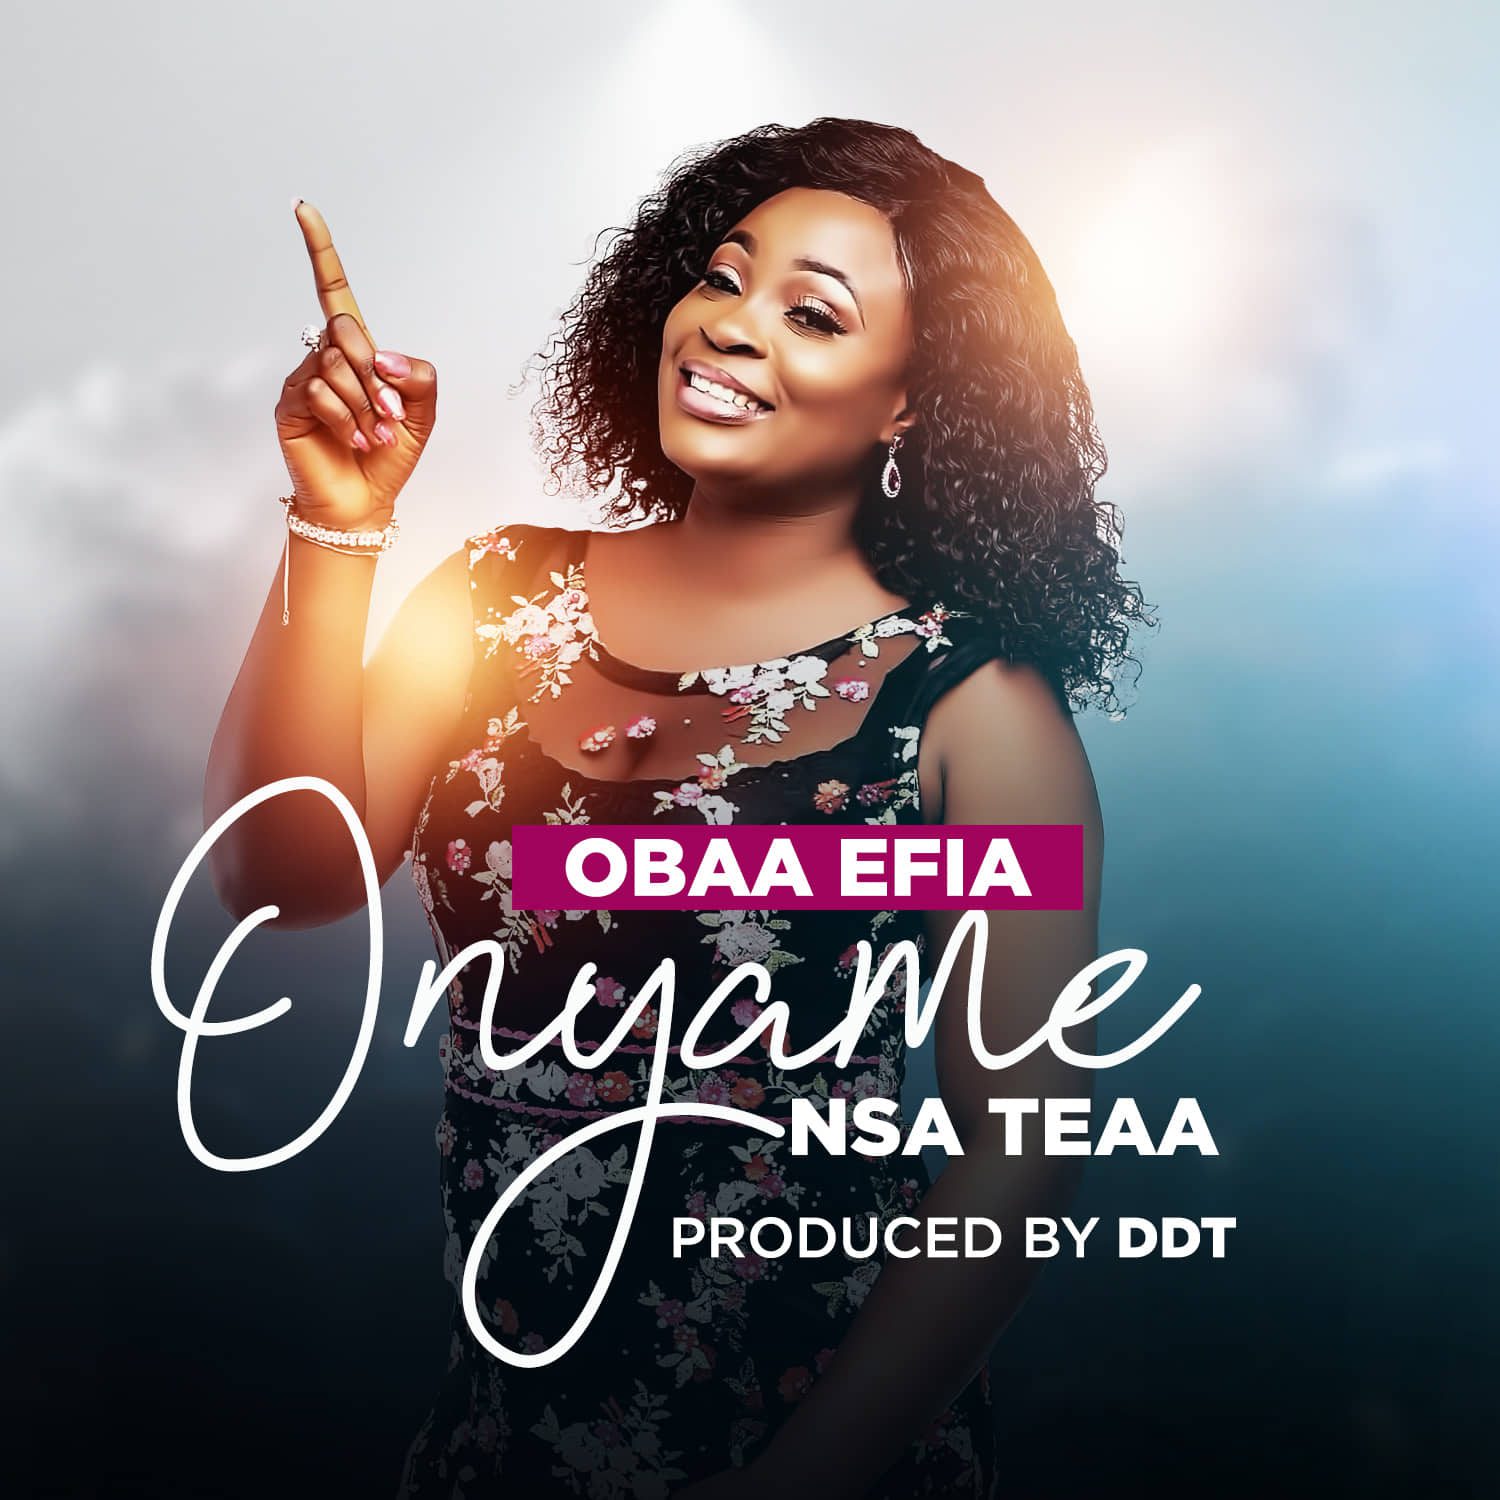 Obaa Efia – Onyame Nsa Teaa (Prod. By DDT)